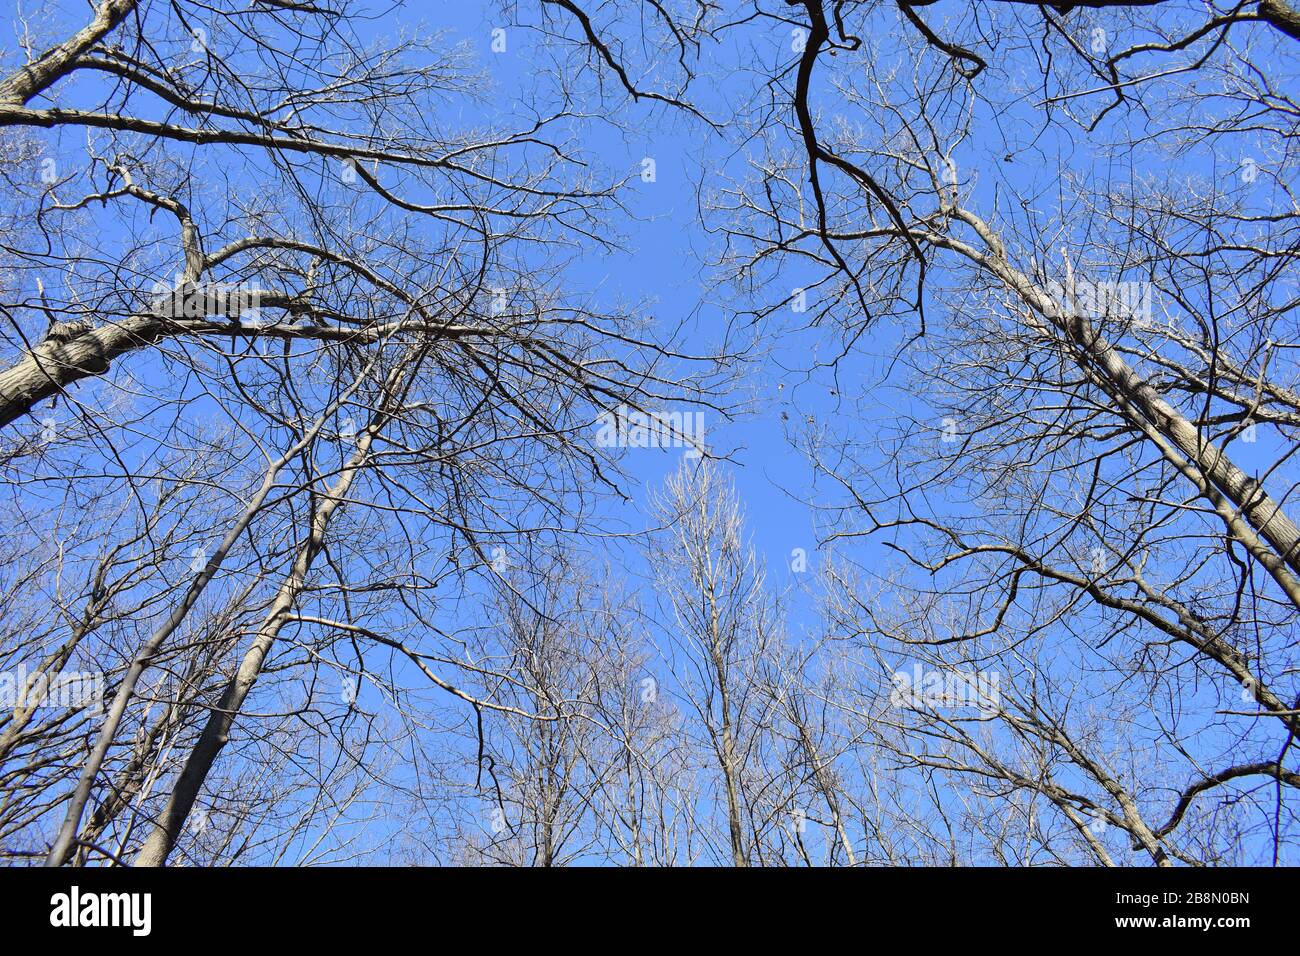 Karge Baumzweige vermitteln den Eindruck eines kalten Wintertags mit sonnigem, blauem Himmelshintergrund Stockfoto